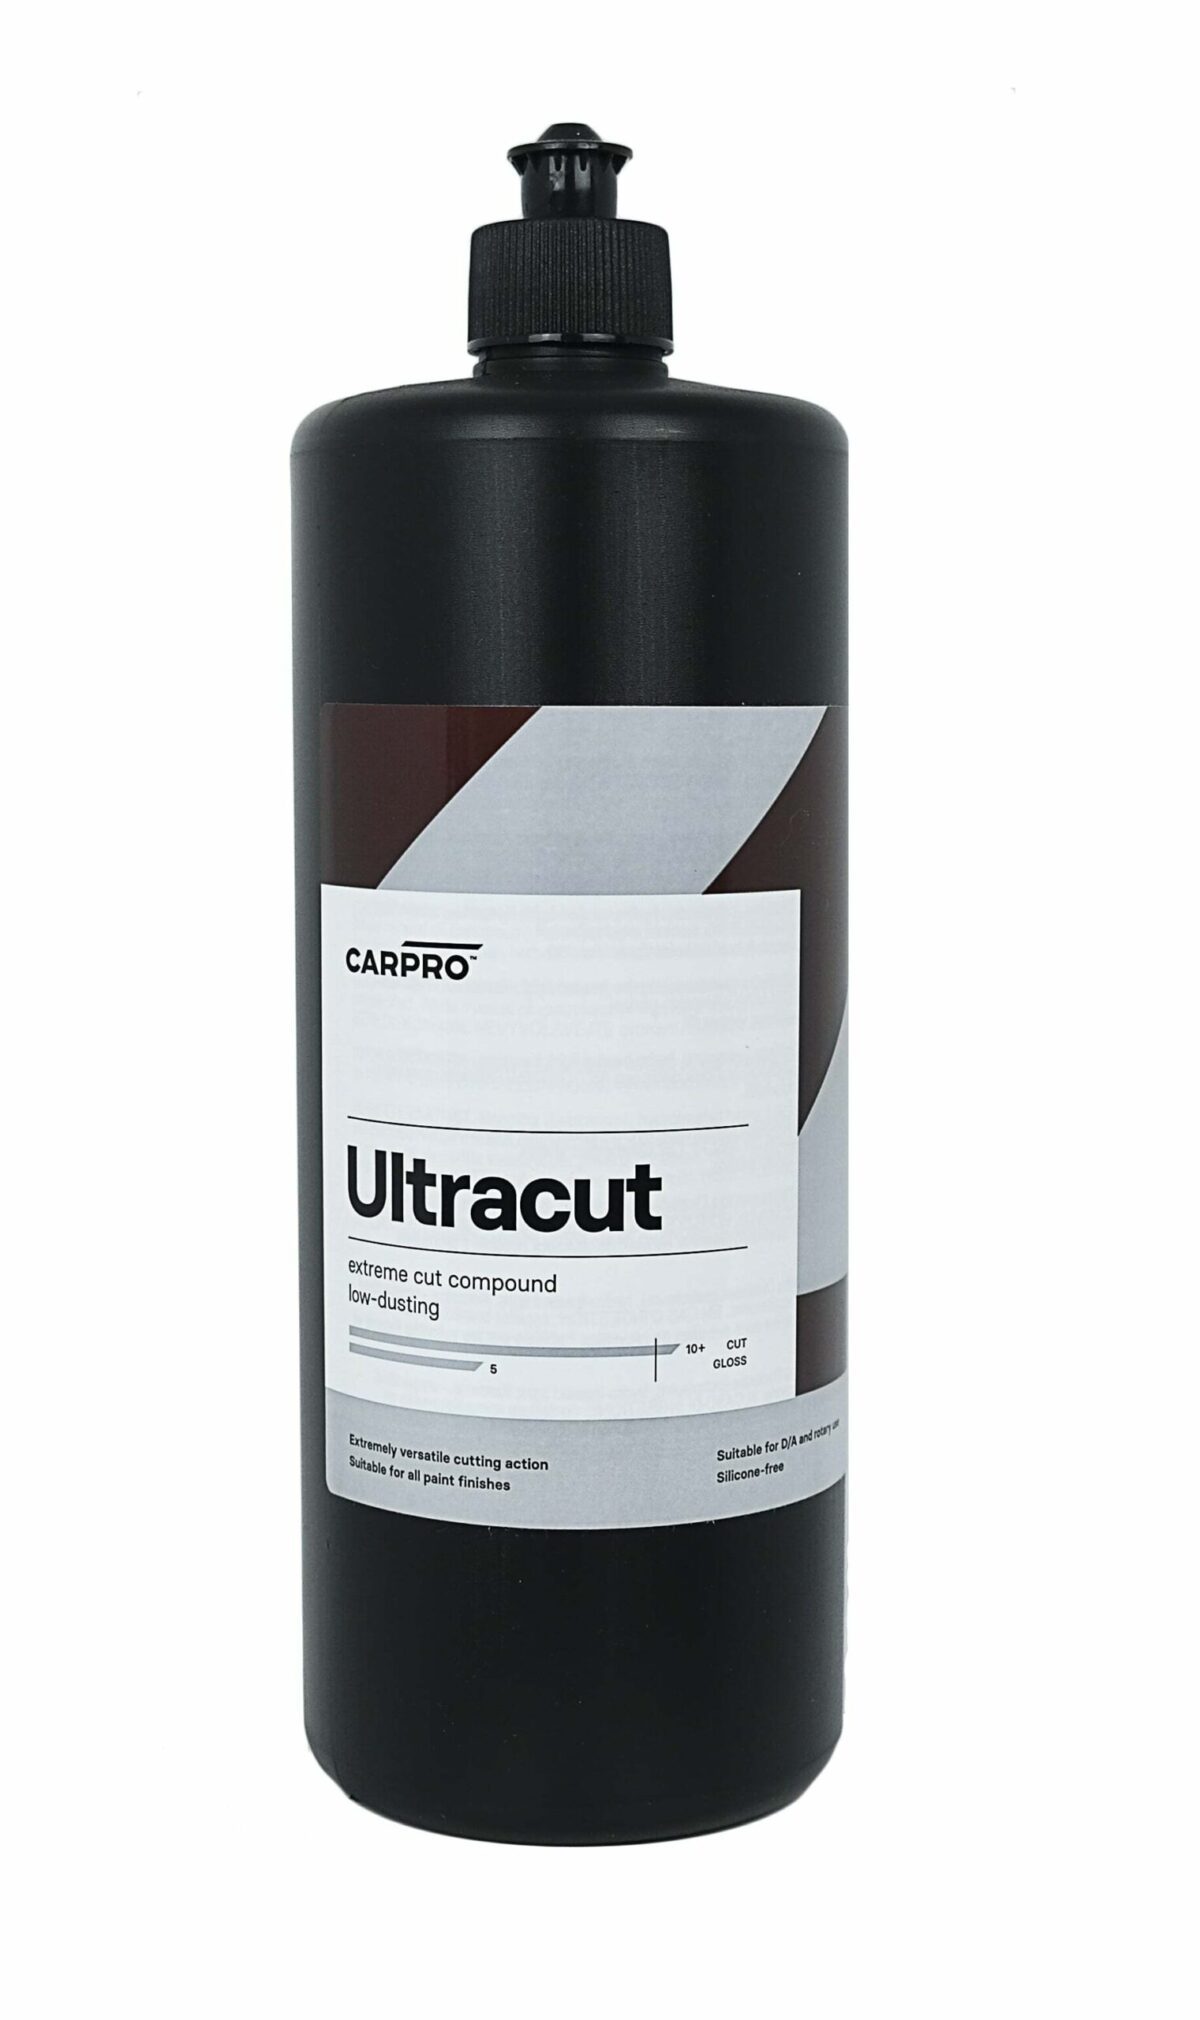 CarPro Ultracut pasta za poliranje je tekućina koja dolazi u bijeloj plastičnoj boci i služi za poliranje laka vozila s namjerom uklanjanja teških defekata.